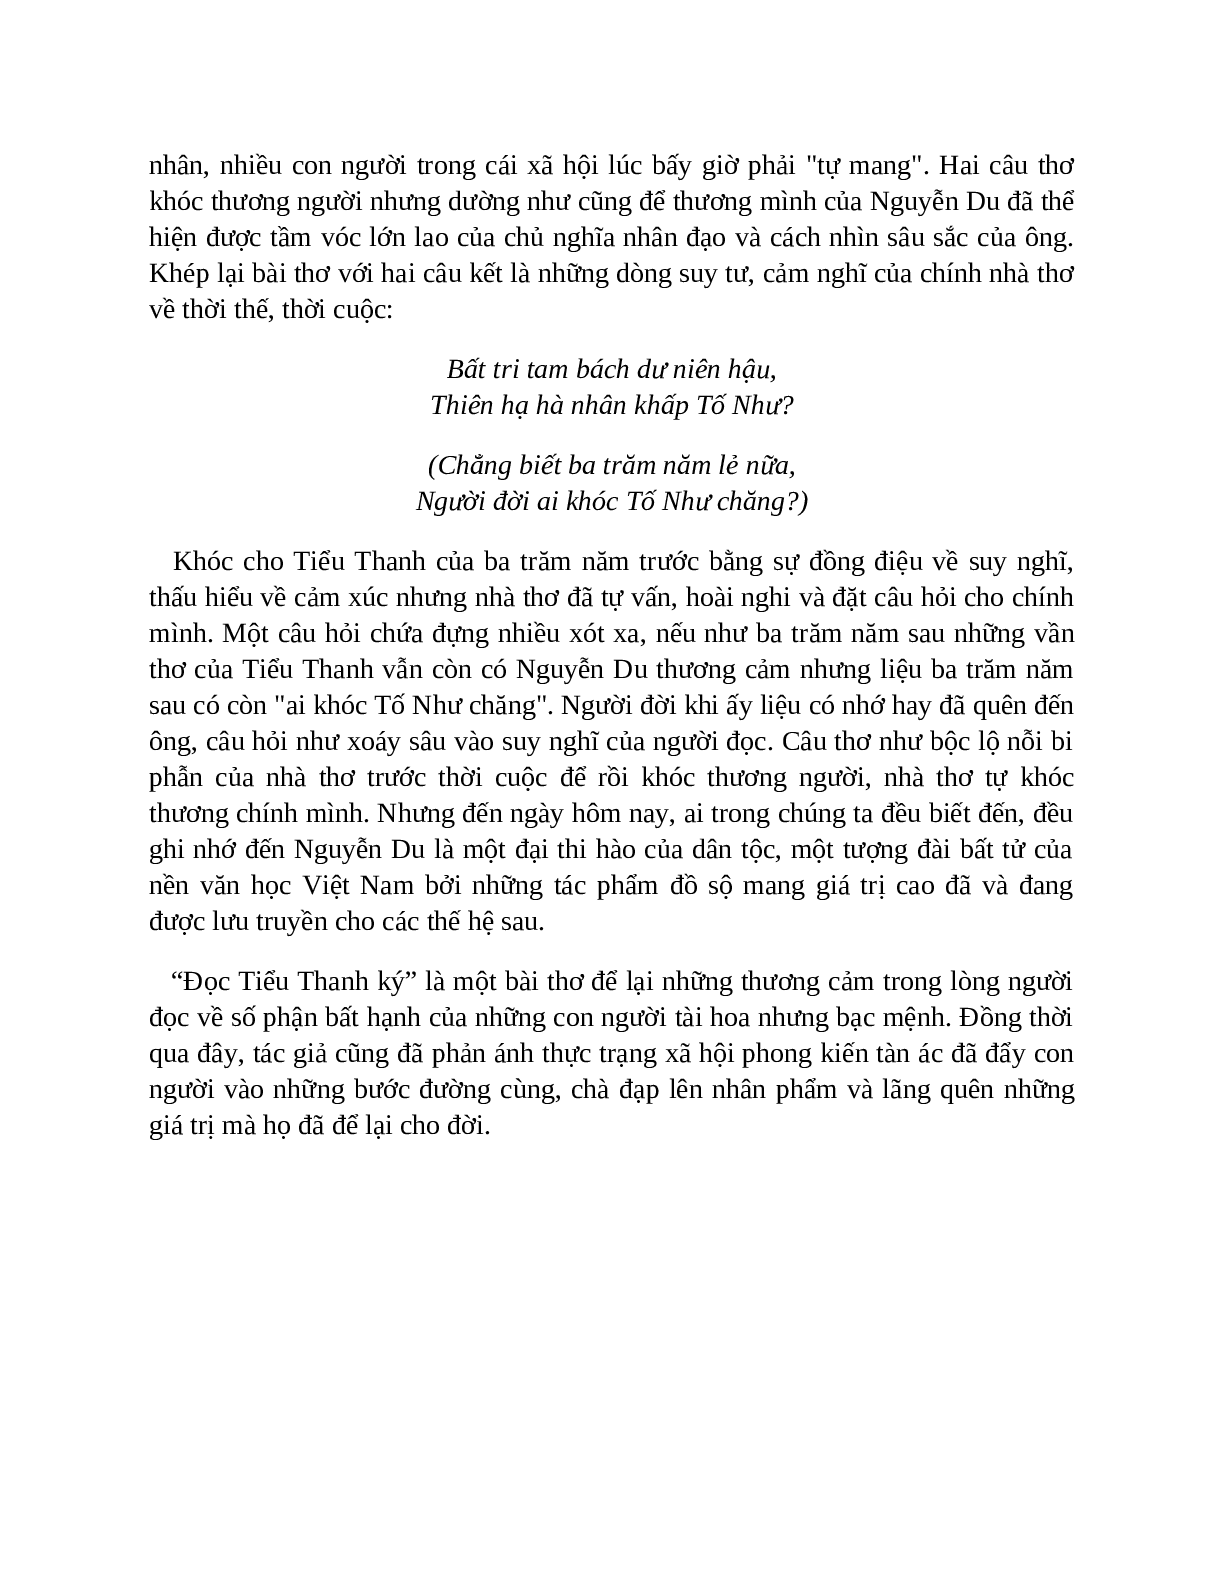 Sơ đồ tư duy bài Đọc Tiểu Thanh kí dễ nhớ, ngắn nhất - Ngữ văn lớp 10 (trang 10)